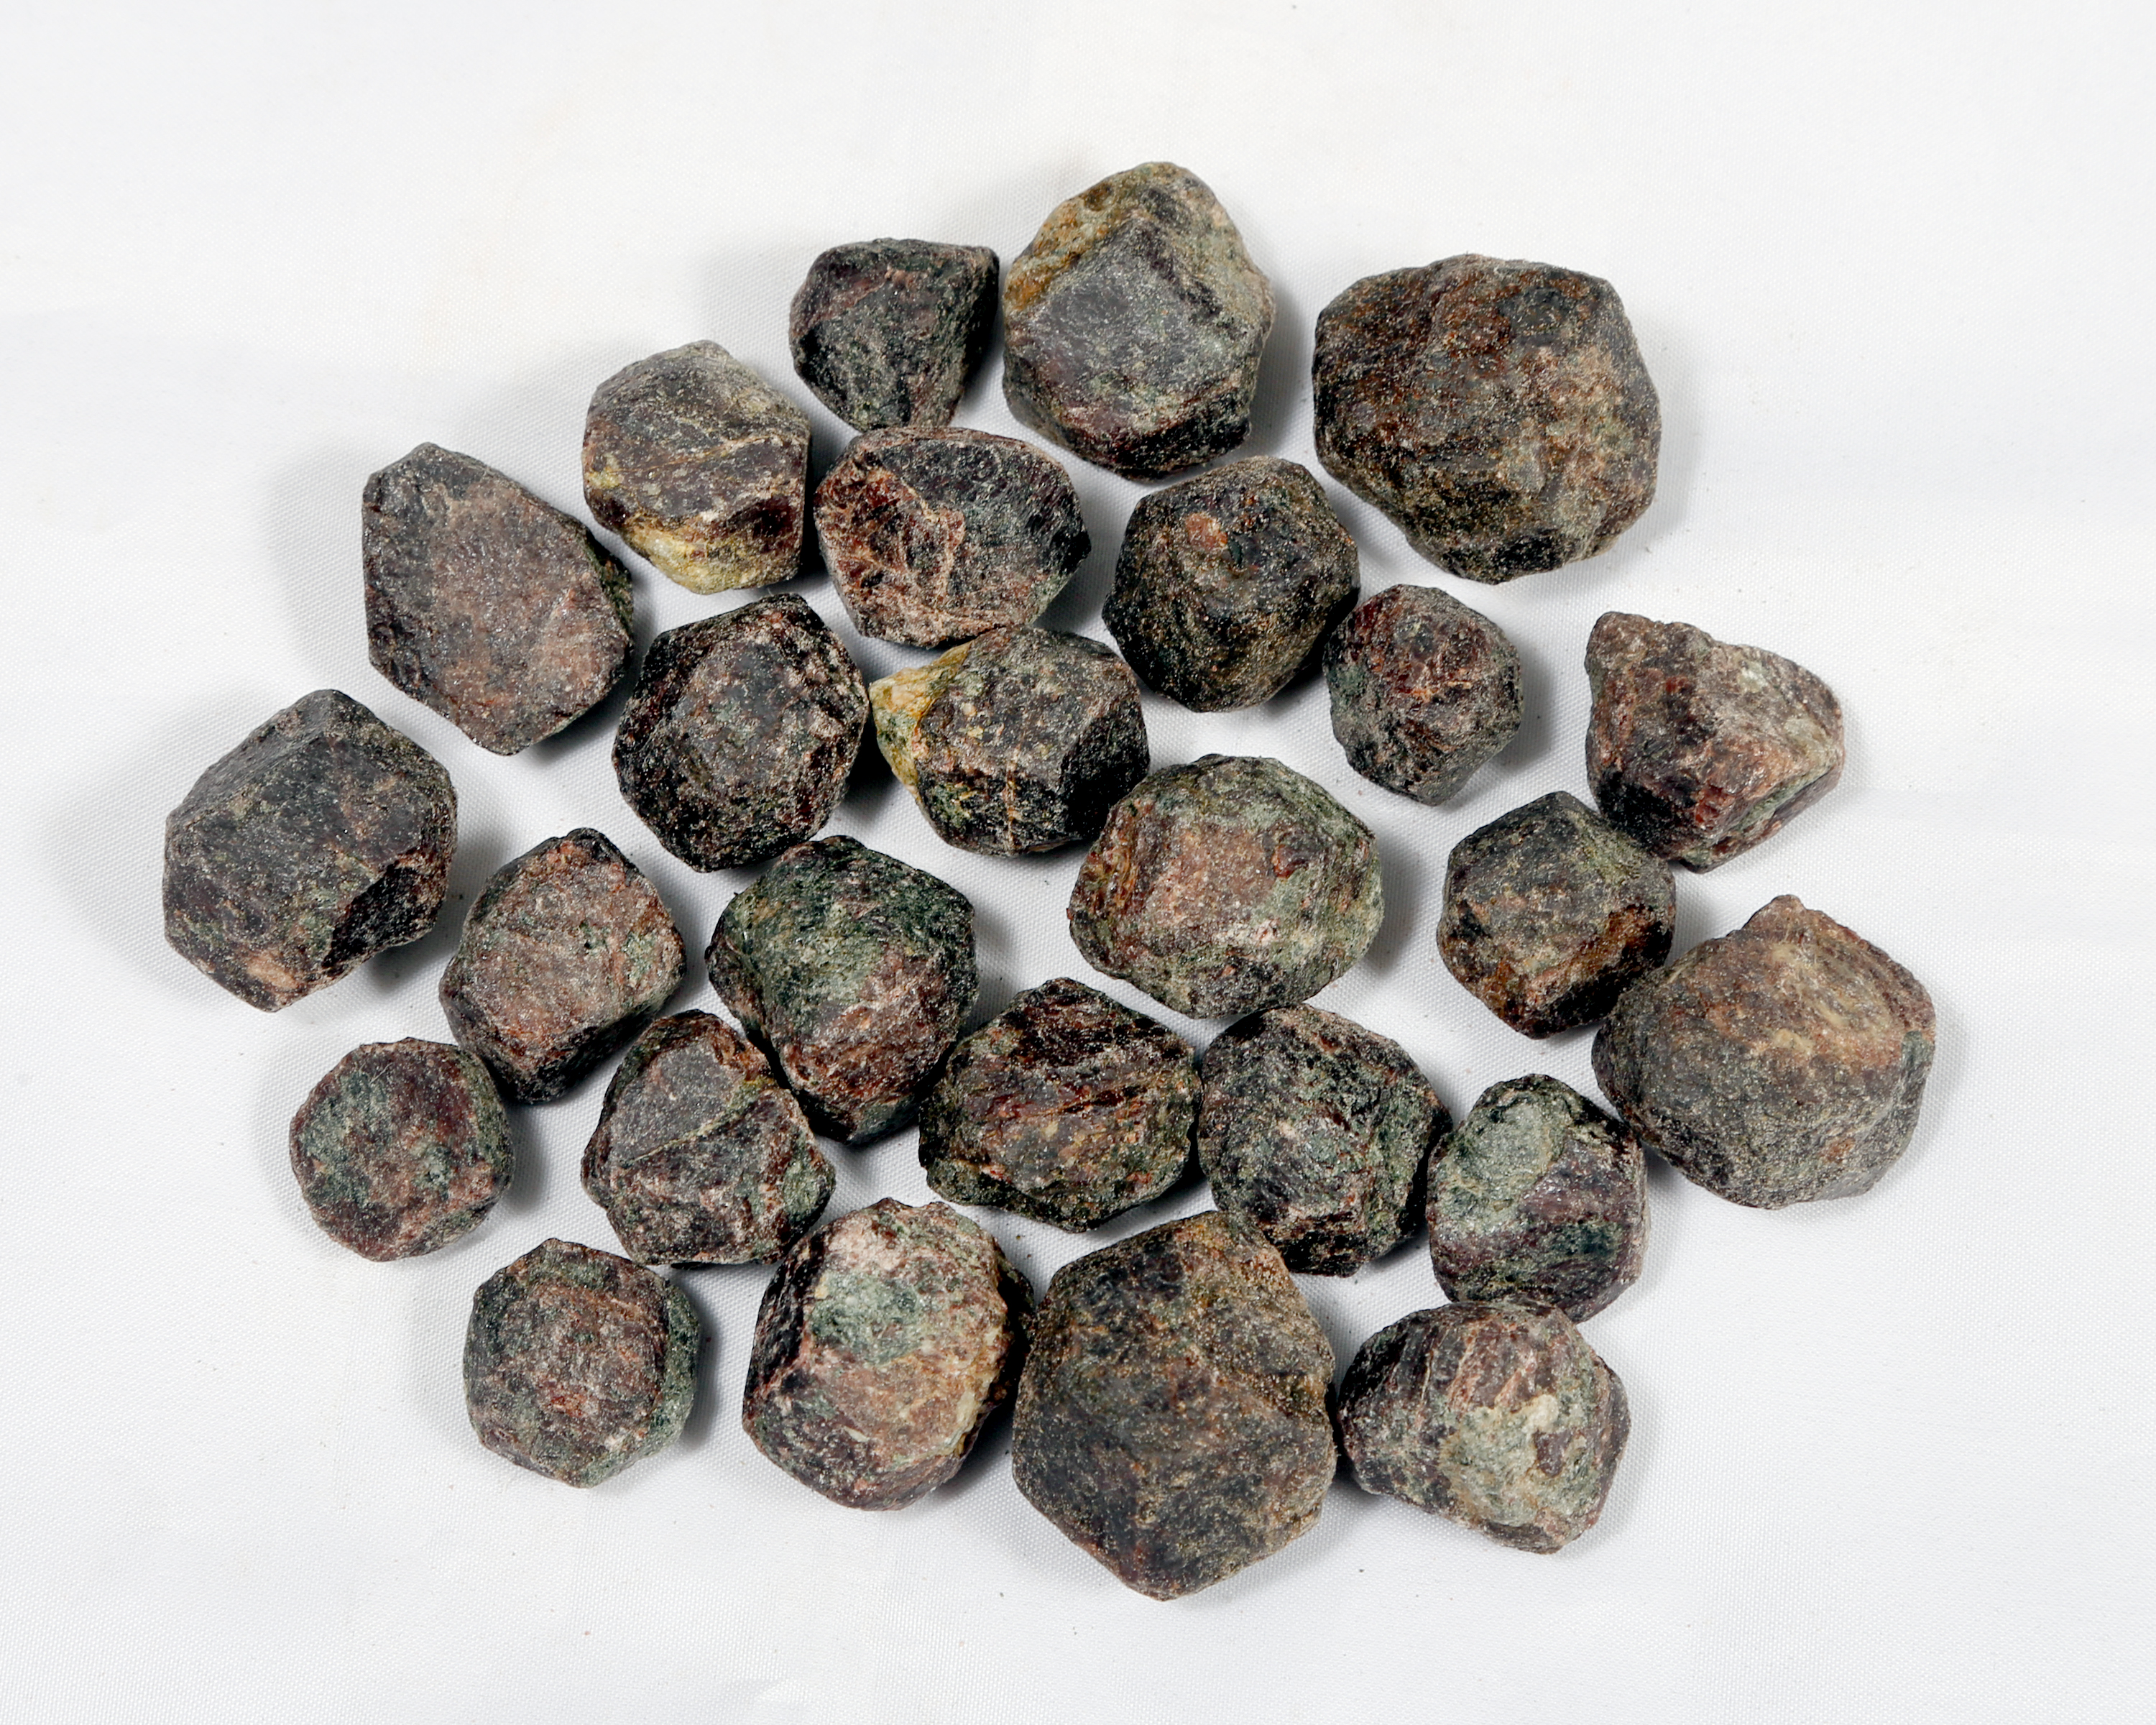 2 Unpolished Mineral Specimens Garnet Silicate Mineral